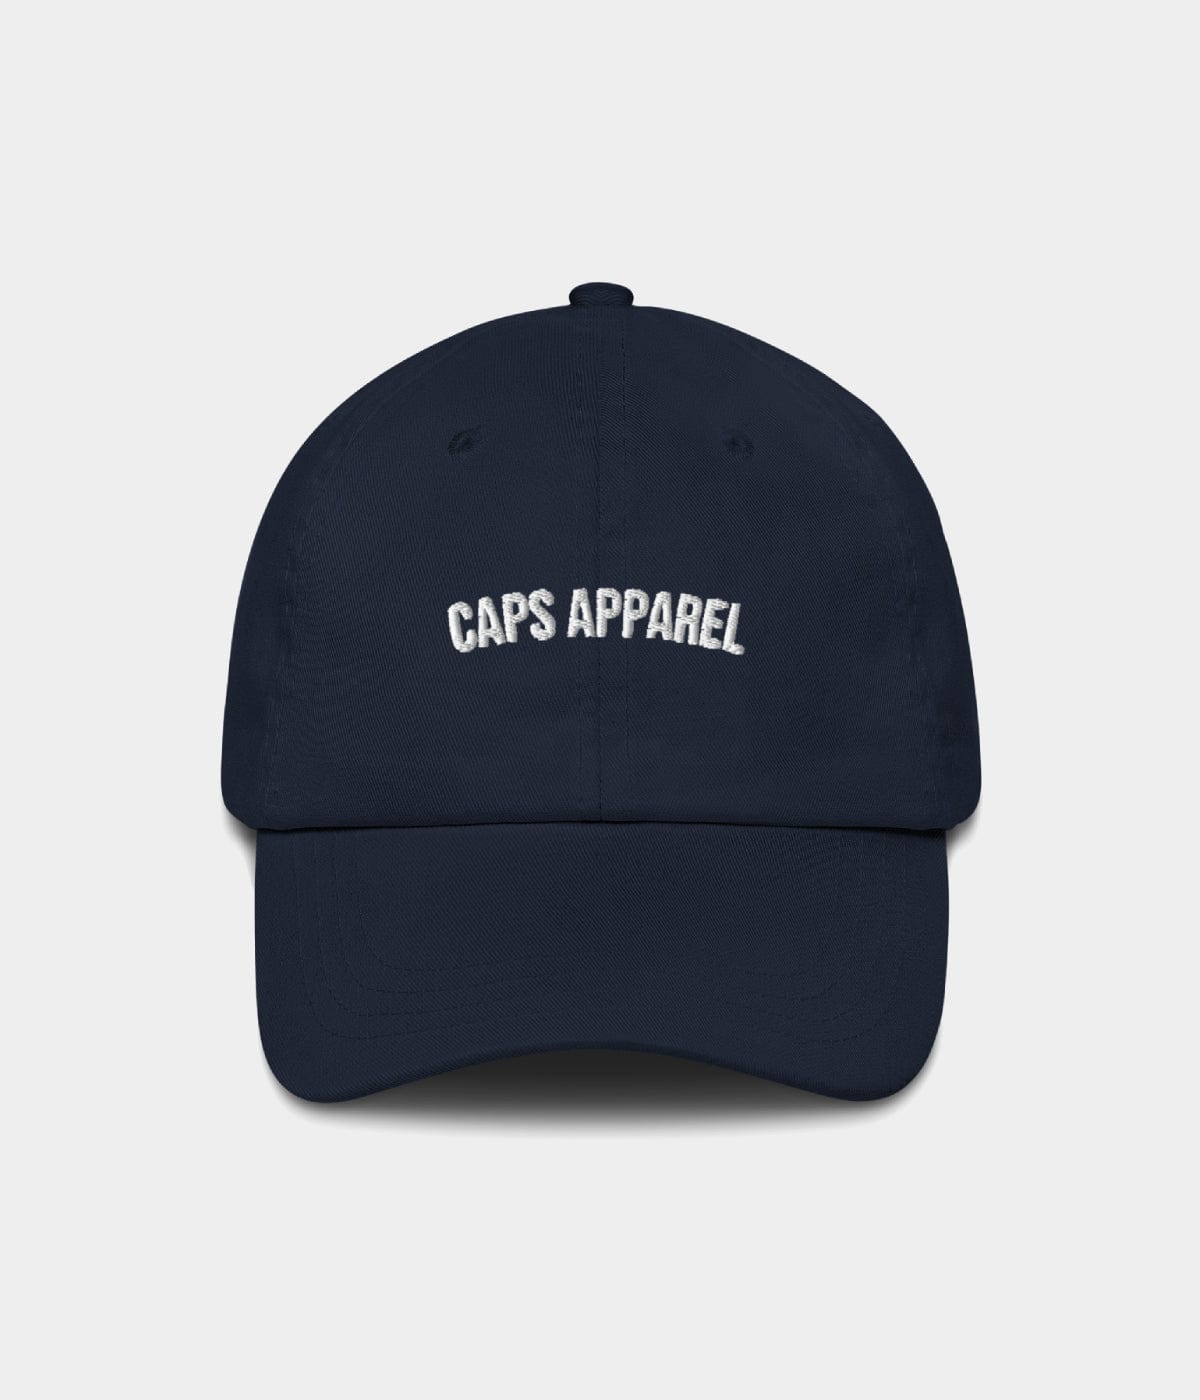 CAPS APPAREL.